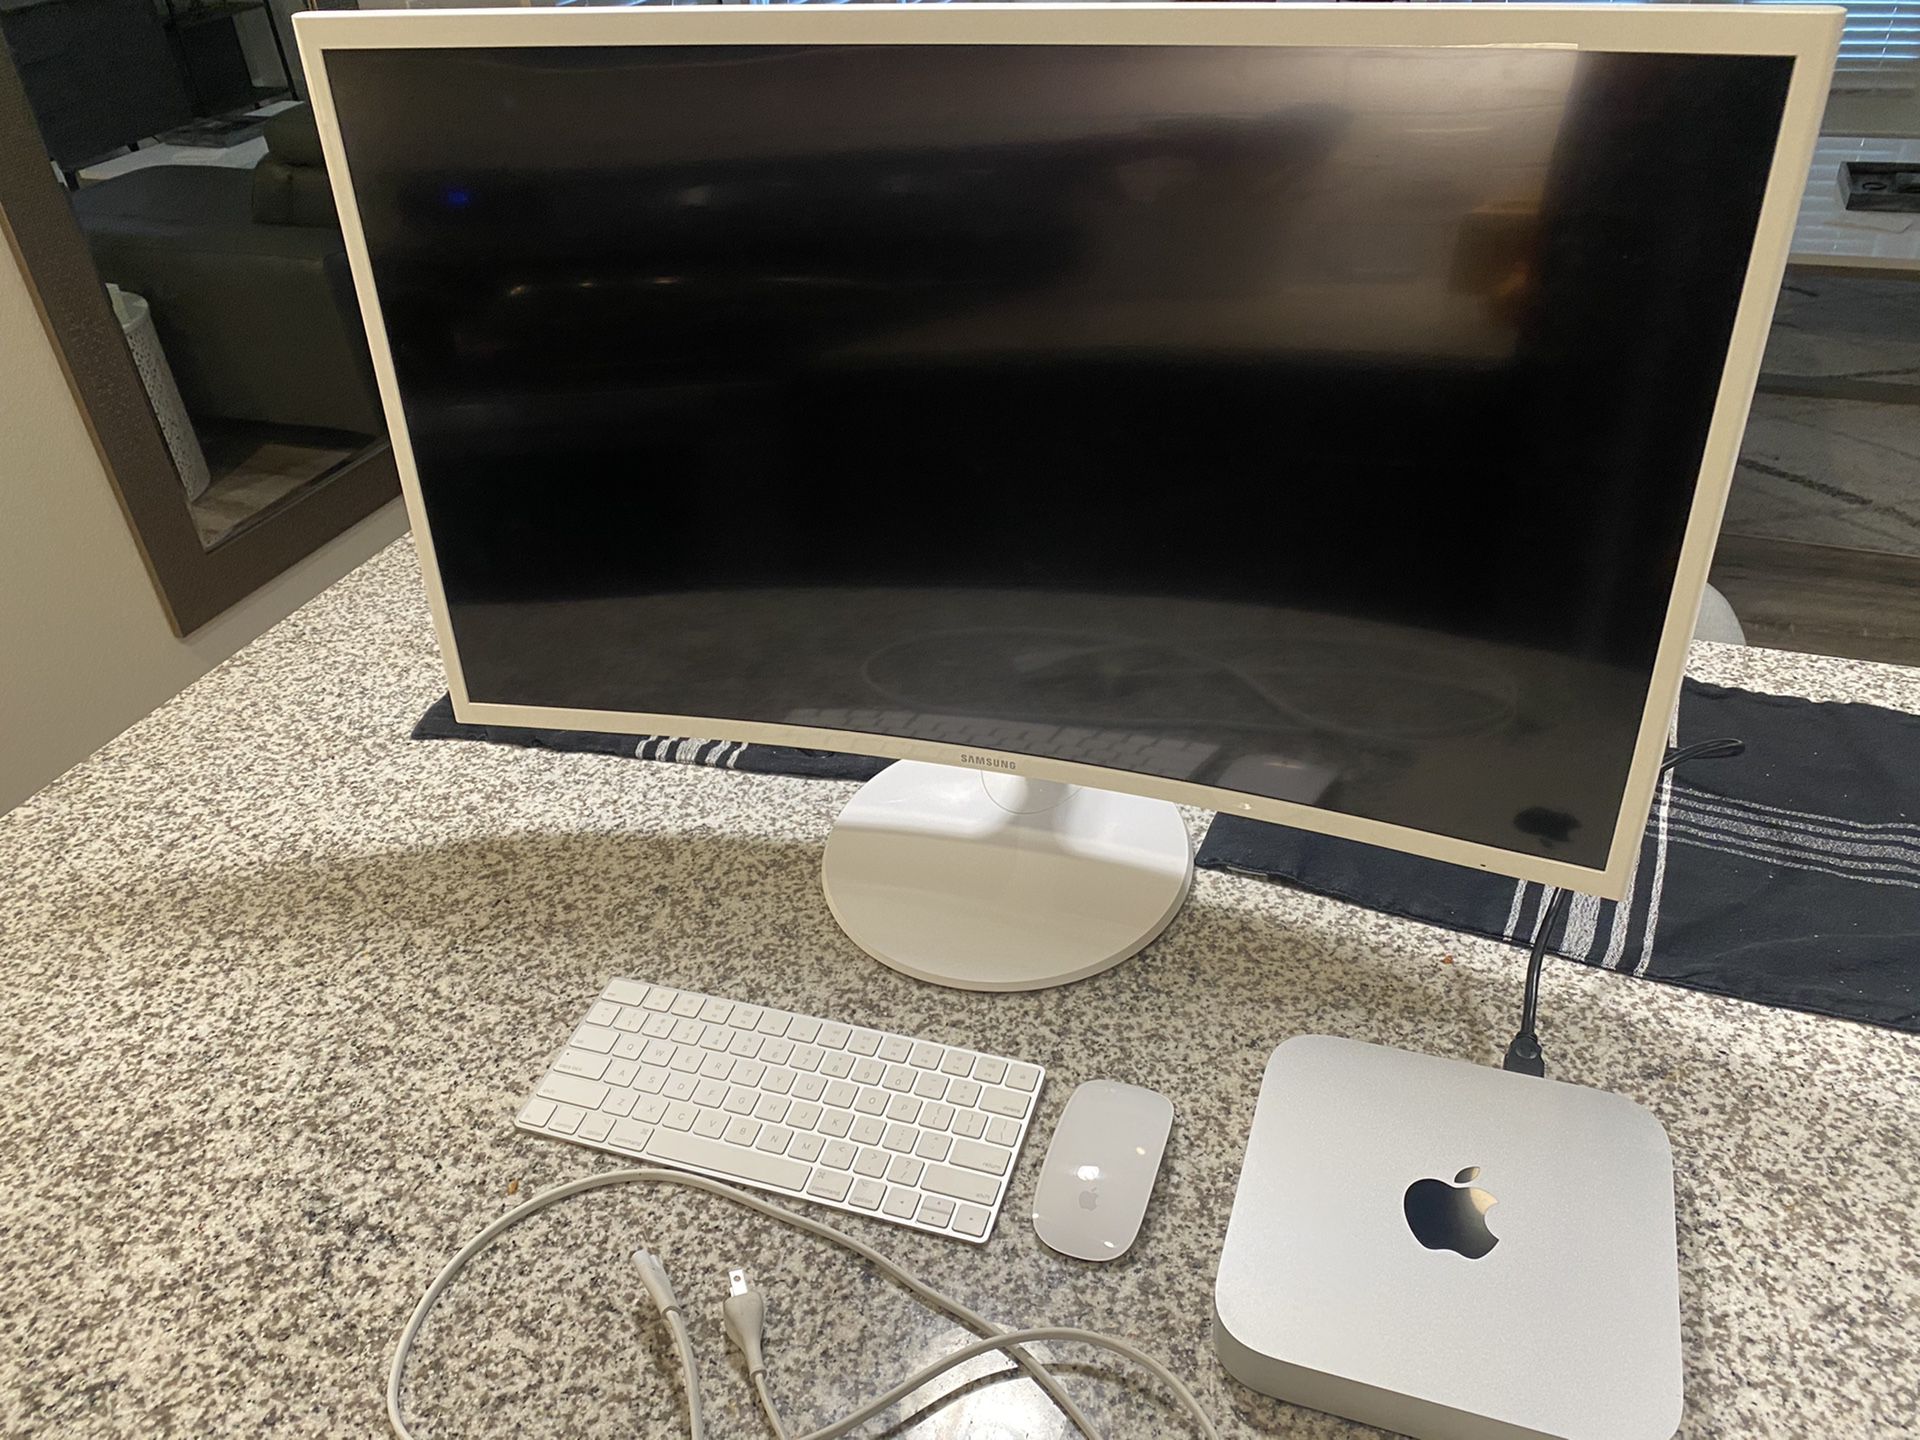 Mac Mini bundle/32in Samsung curve monitor